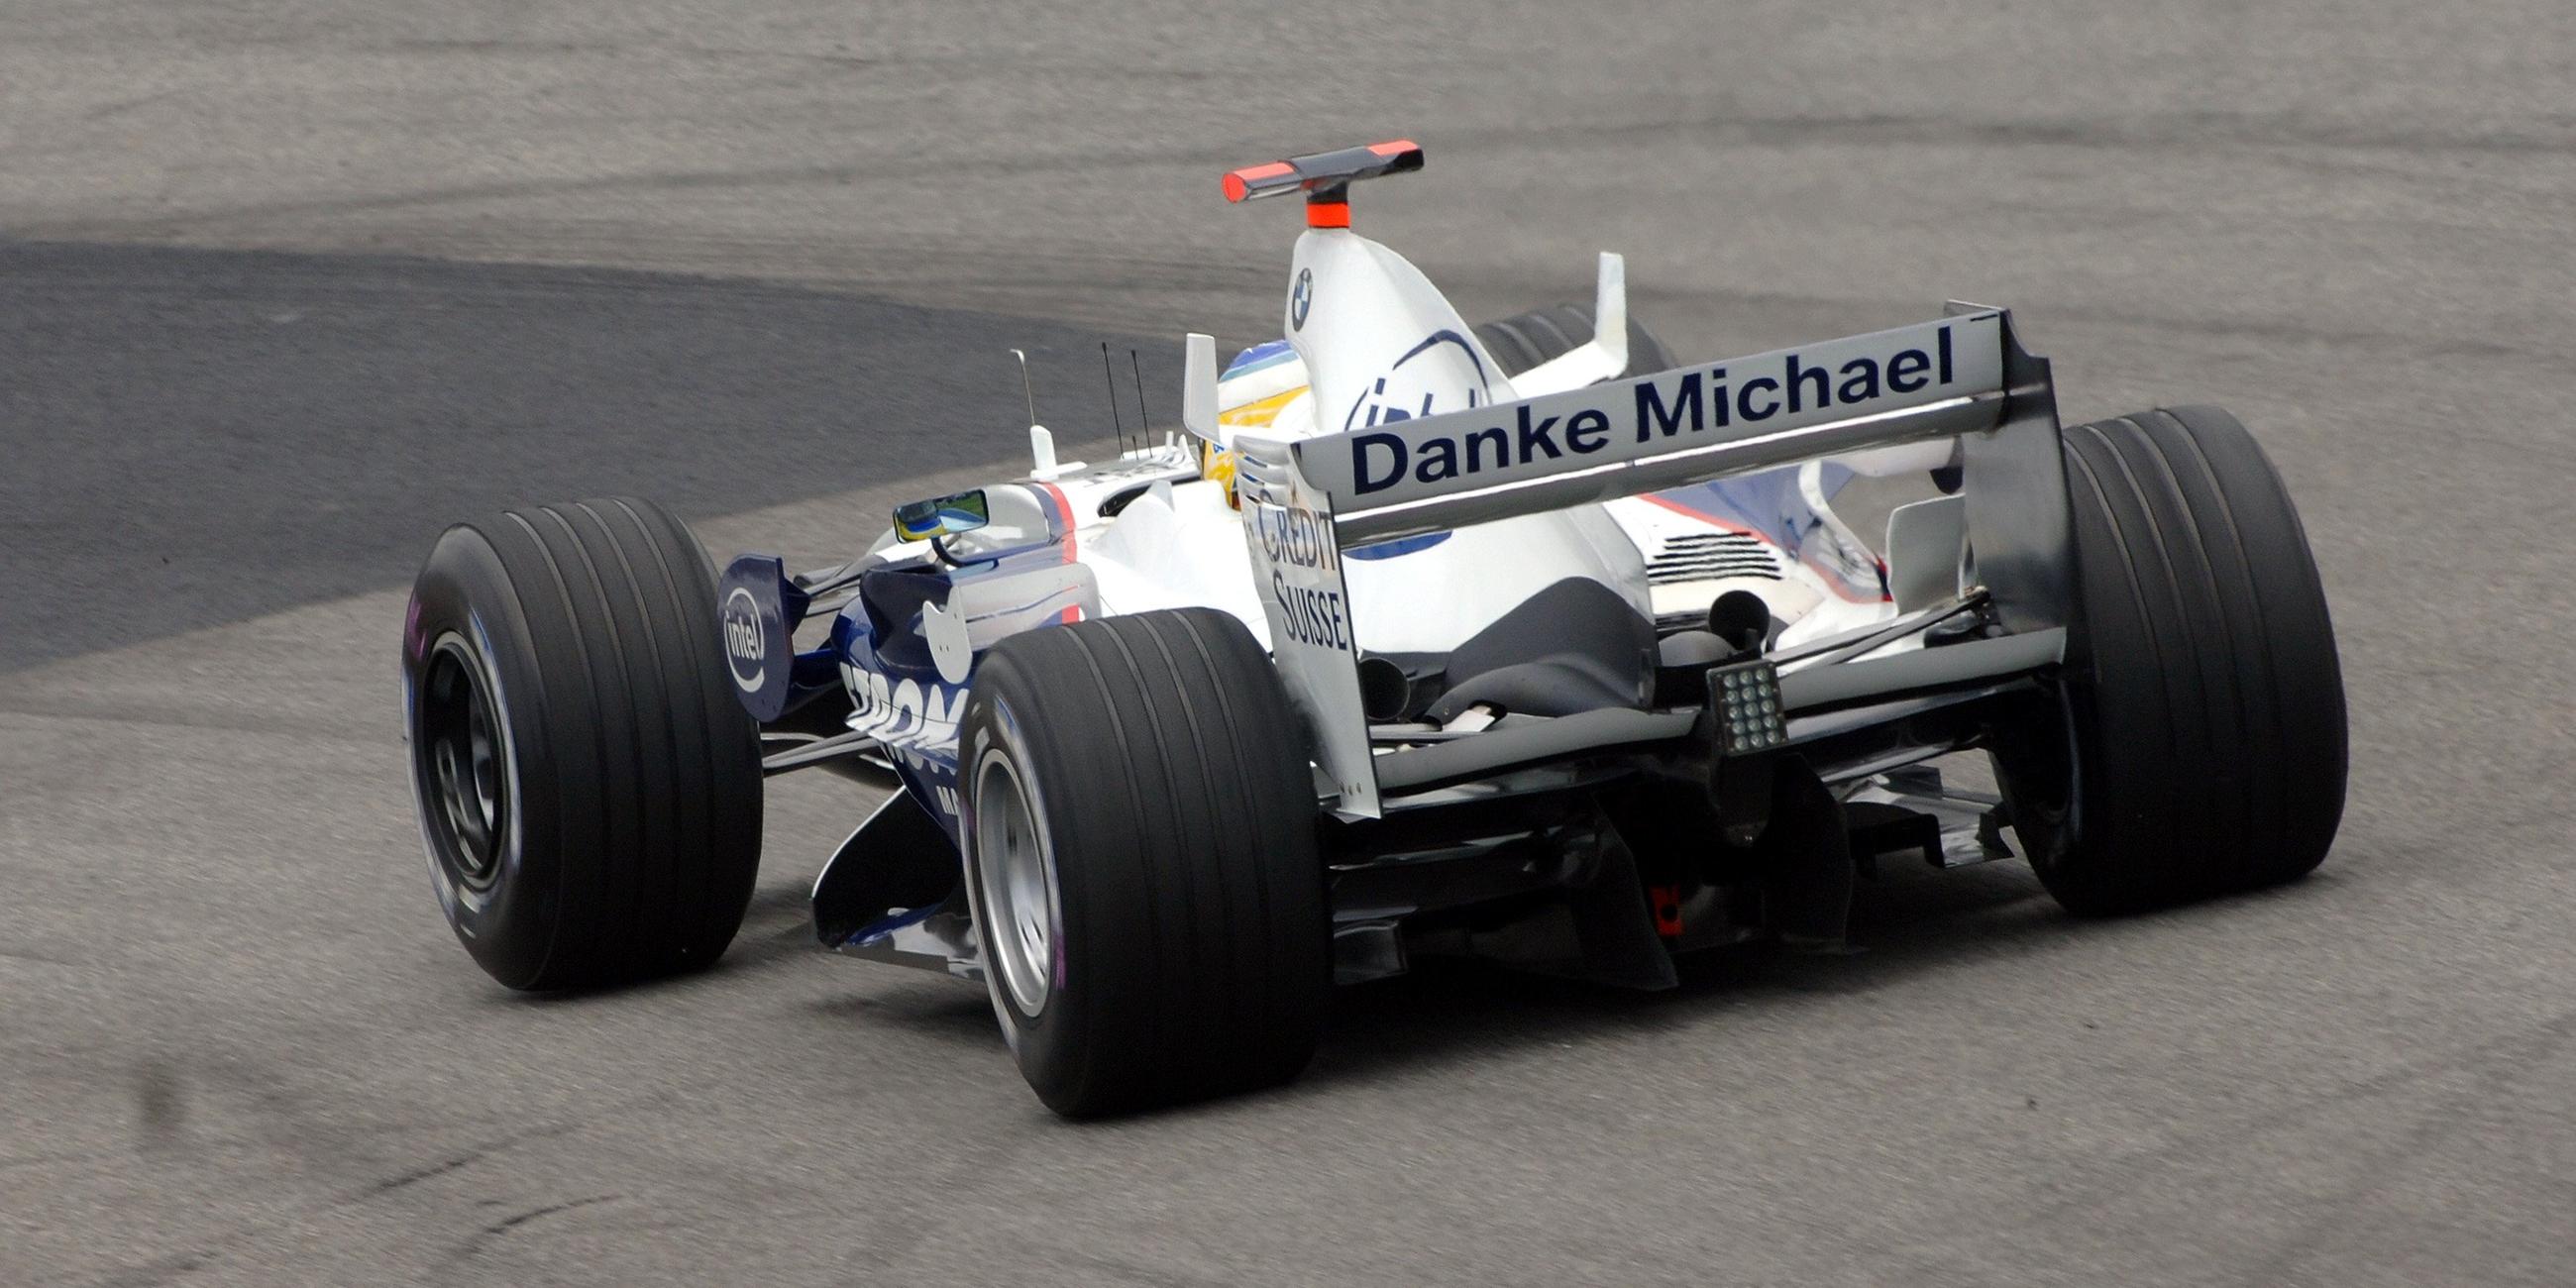 Zum Ende der Saison 2006 erklärt Schumacher seinen Rücktritt aus der Formel 1. Die übrigen Fahrer, hier Nick Heidfeld, zollen ihm Respekt.